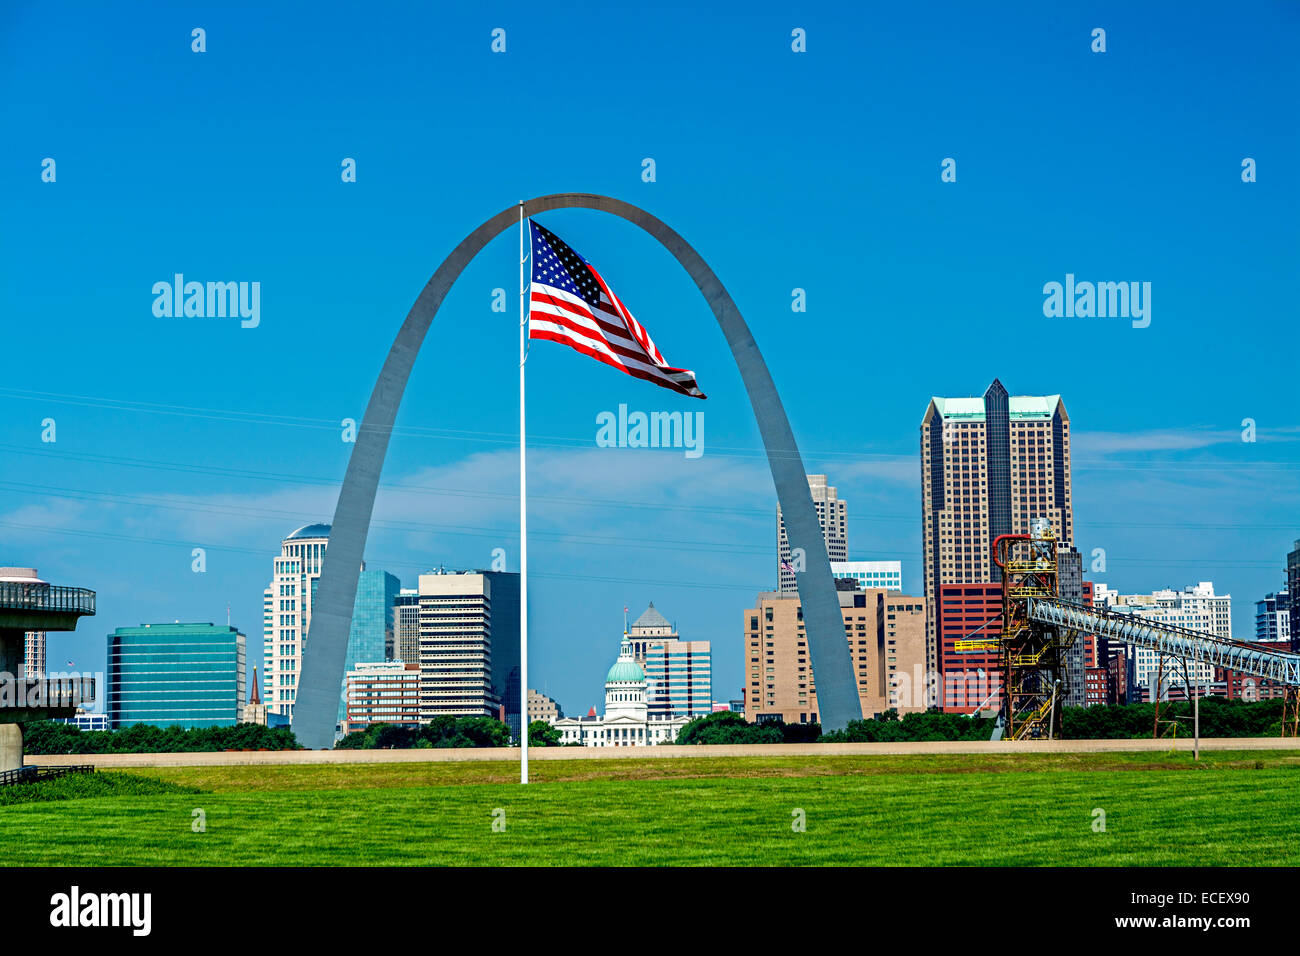 Saint Louis Missouri, St. Louis Art, St. Louis Map, St Louis Flag, Saint  Louis Art, Missouri, Saint Louis Print, St. Louis Print, STL